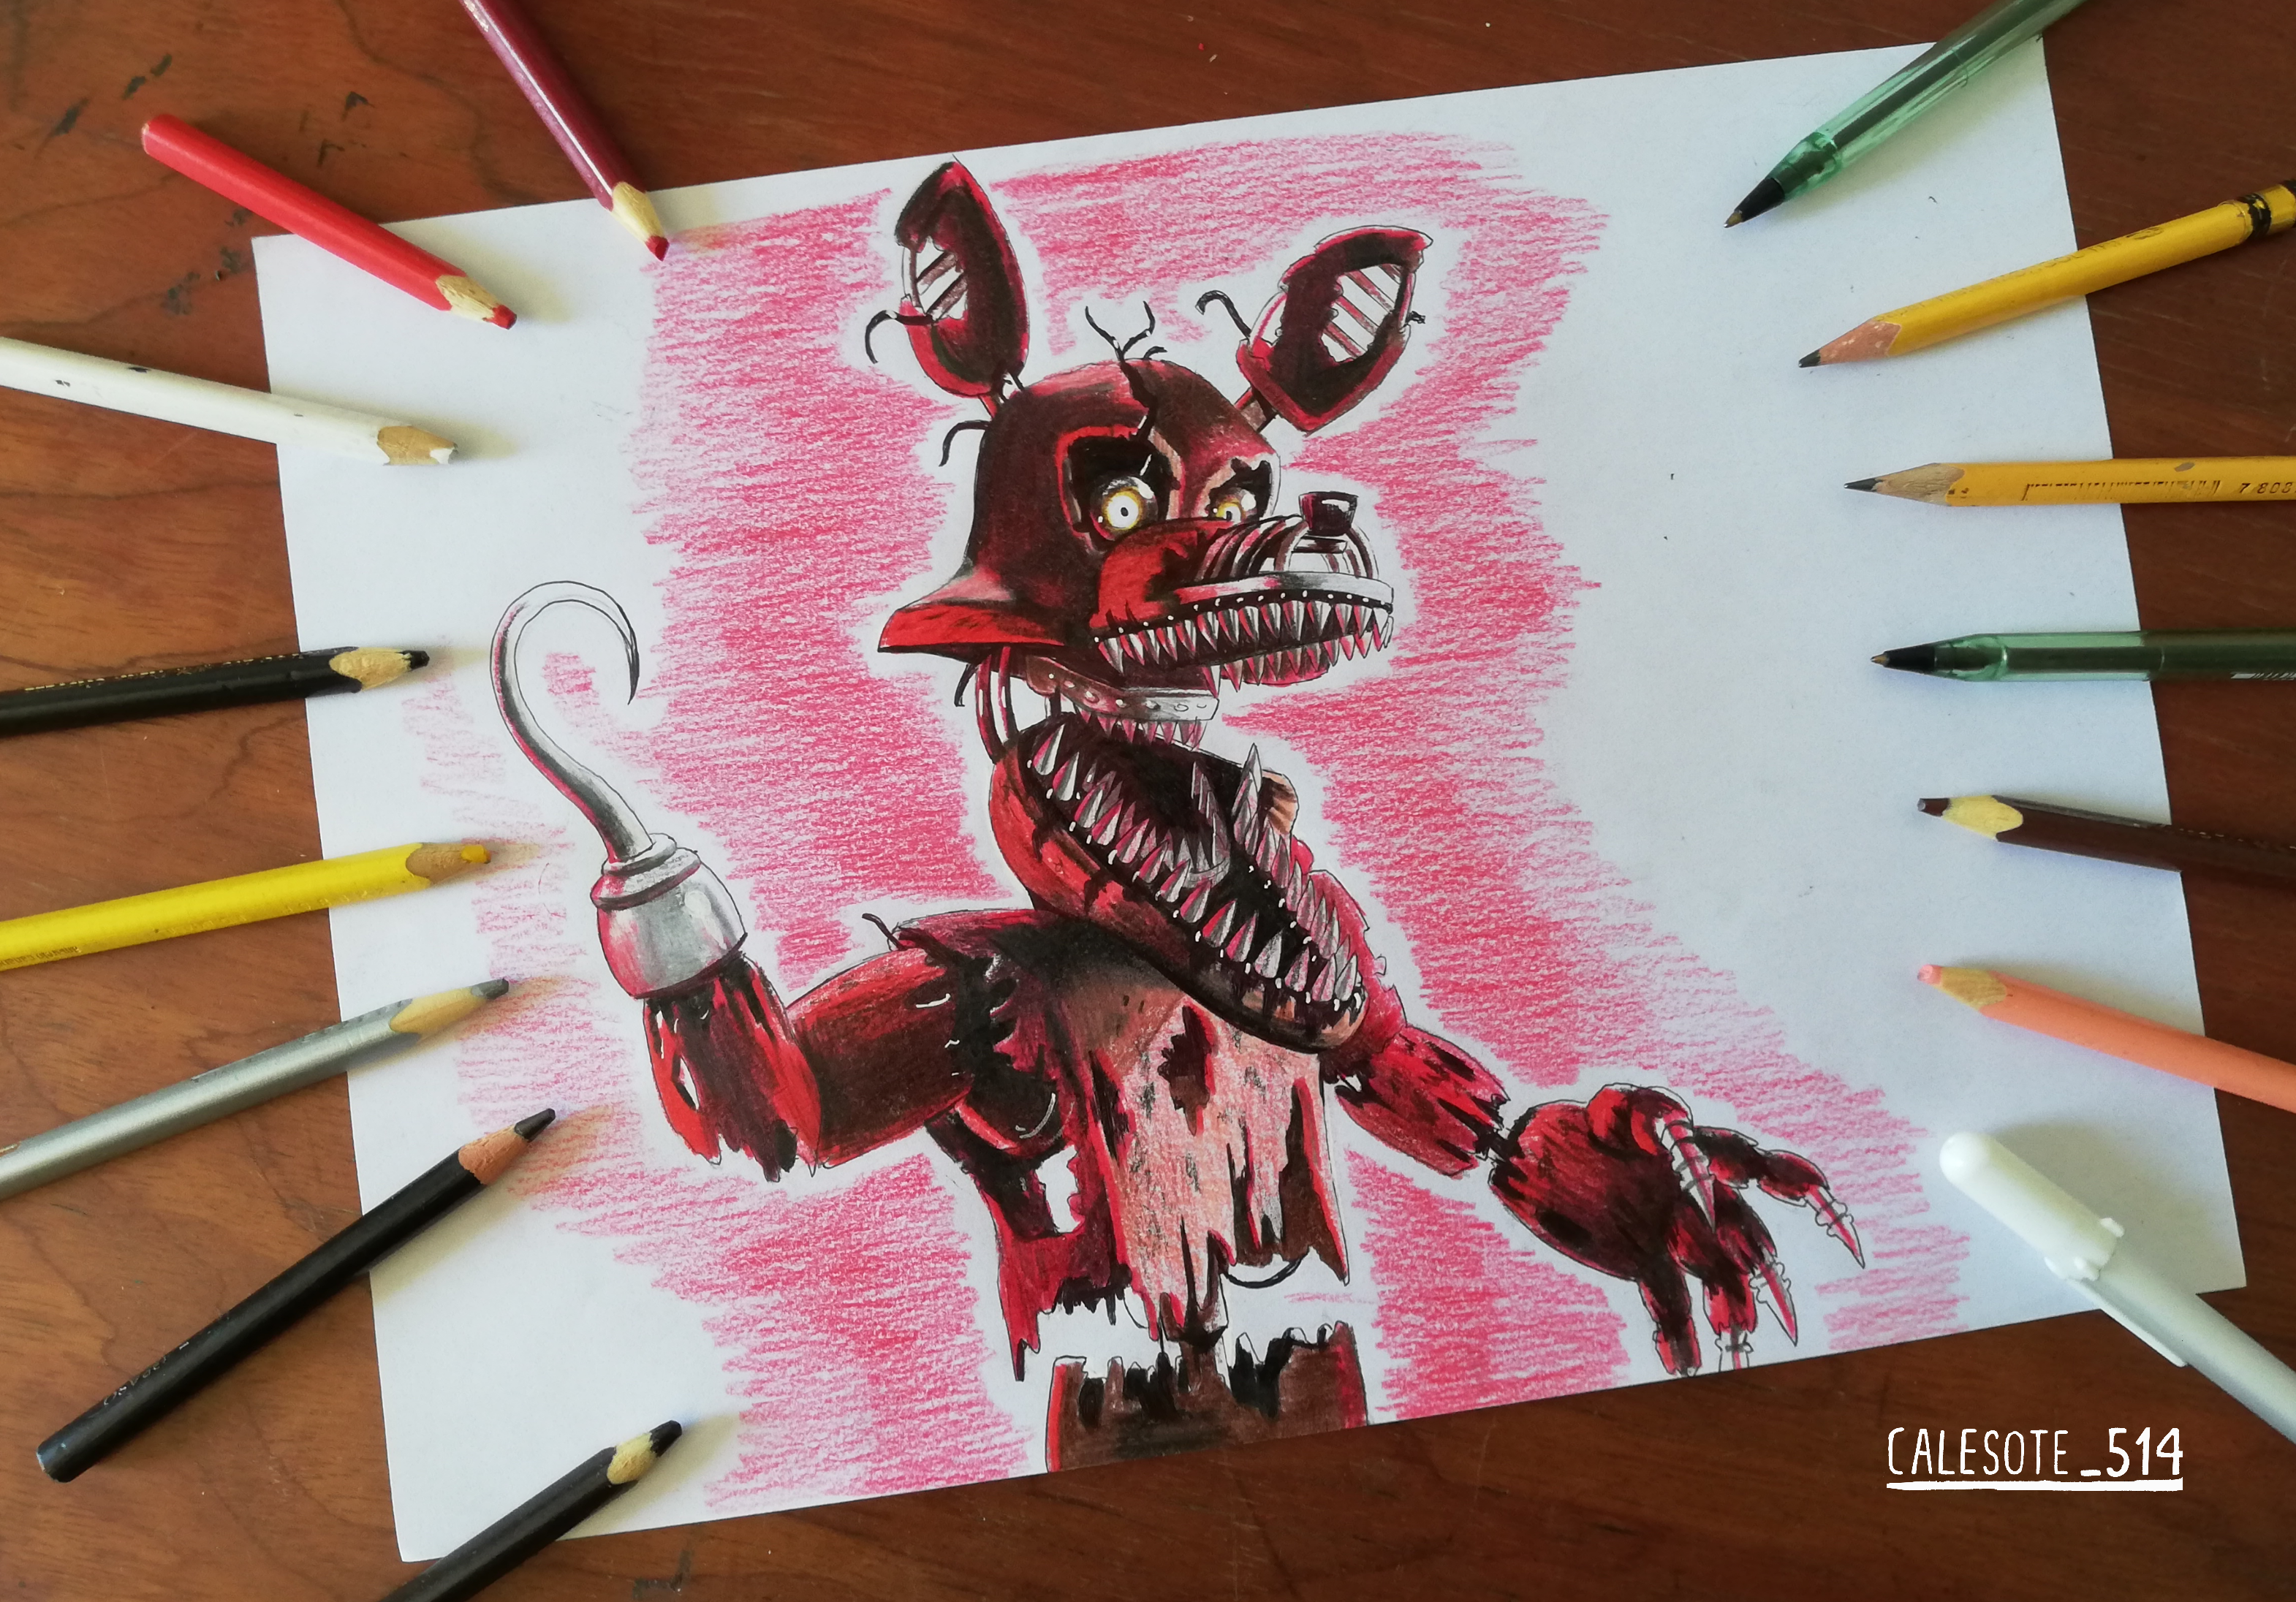 Nightmare Foxy Art Tradicional by Calesote514 by Calesote514 on DeviantArt